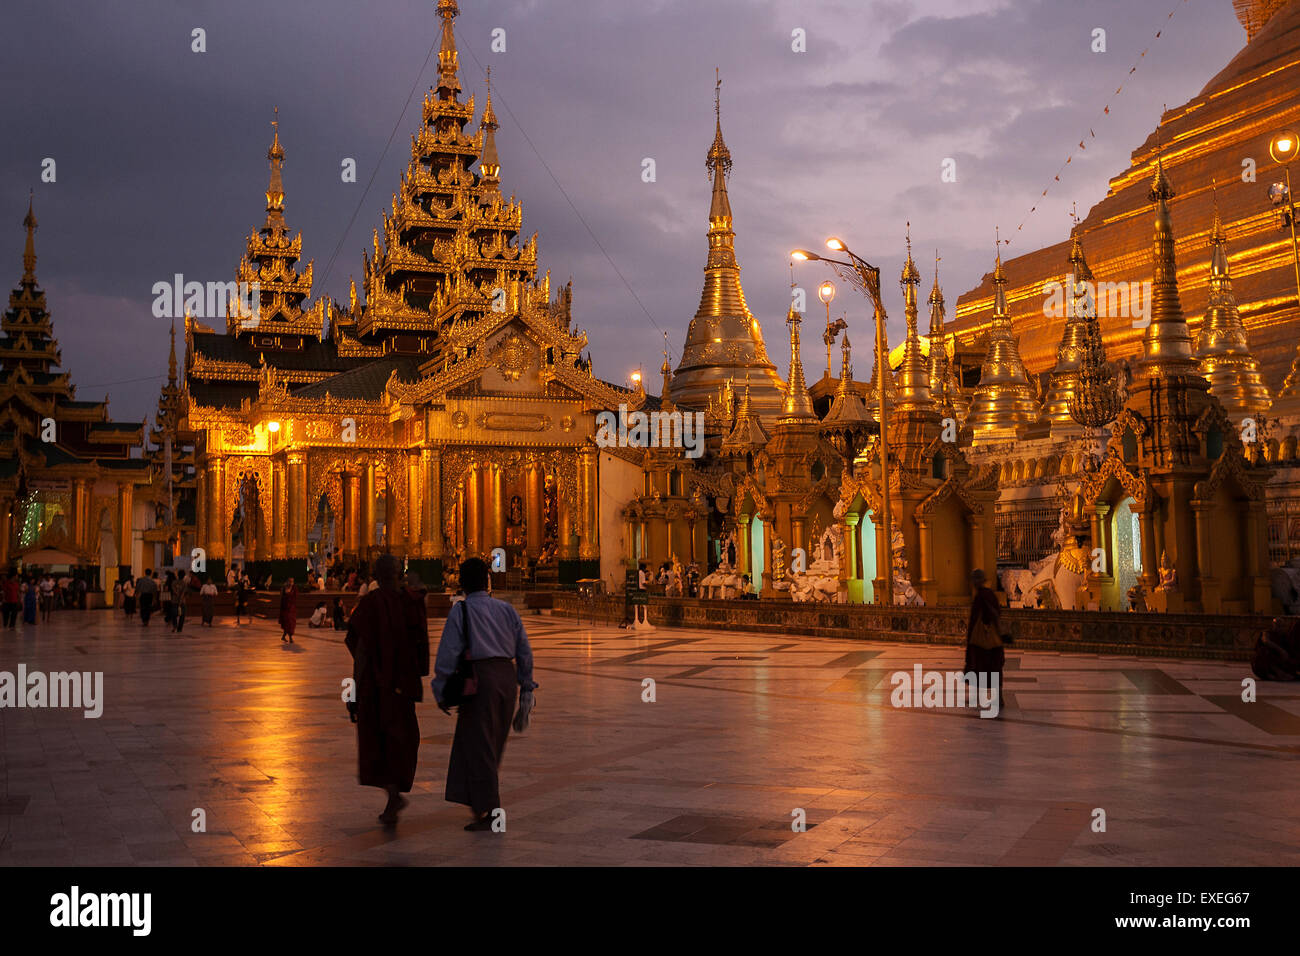 Los templos y santuarios de la Pagoda de Shwedagon, Escena nocturna, Yangon, Myanmar Foto de stock